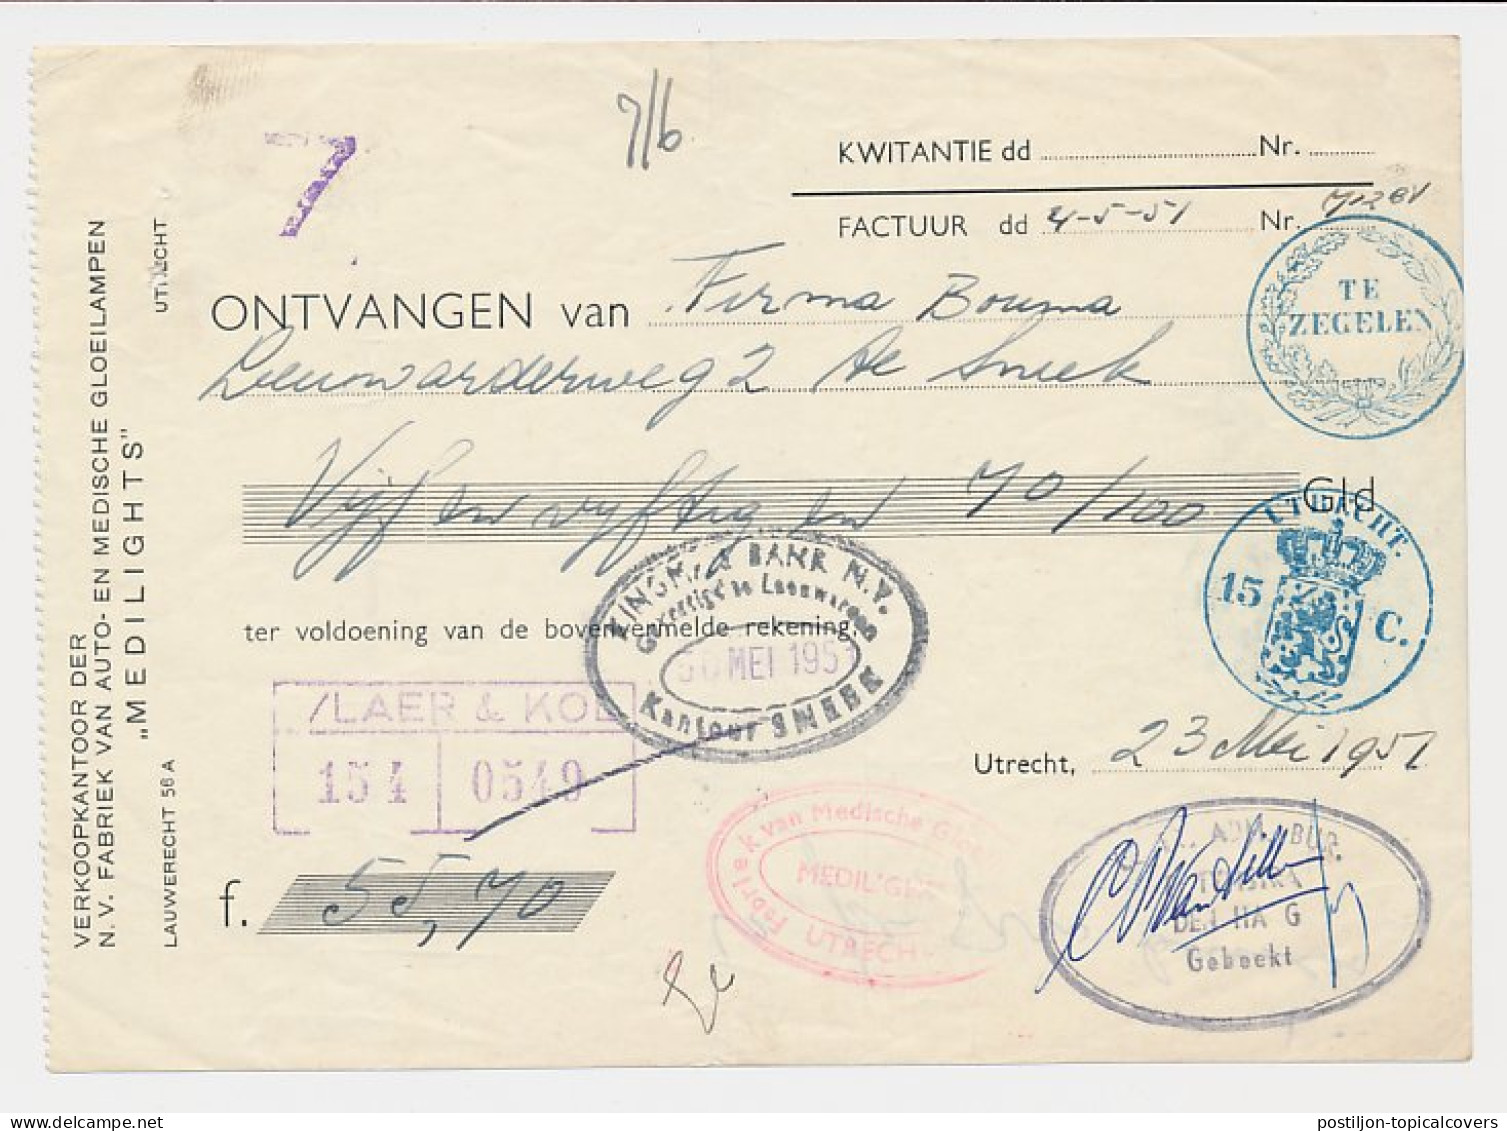 Fiscaal / Revenue - 15 C. Utrecht - 1951 - Steuermarken